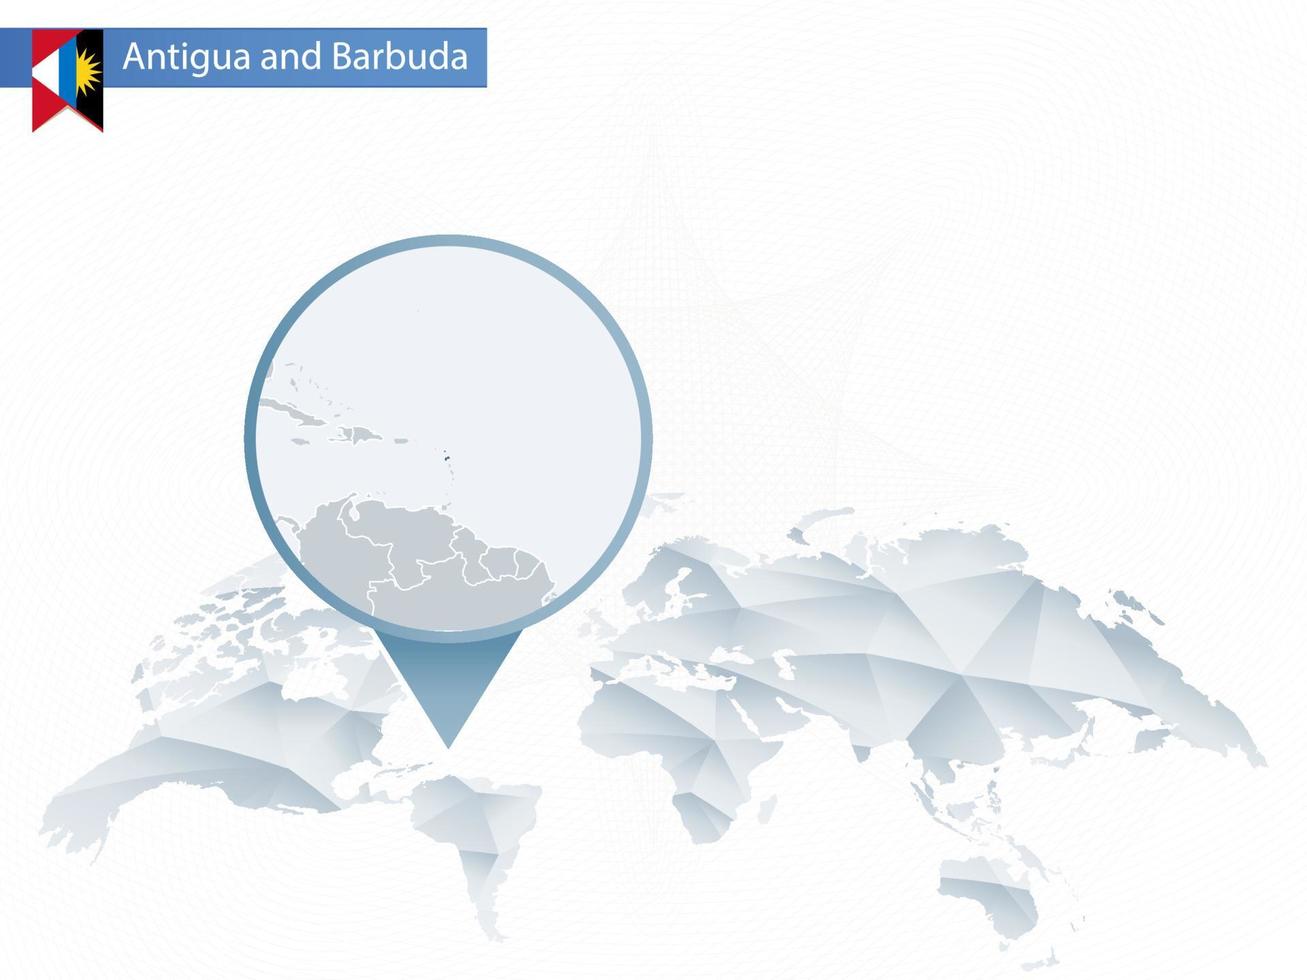 mappa del mondo arrotondata astratta con mappa dettagliata di antigua e barbuda appuntata. vettore